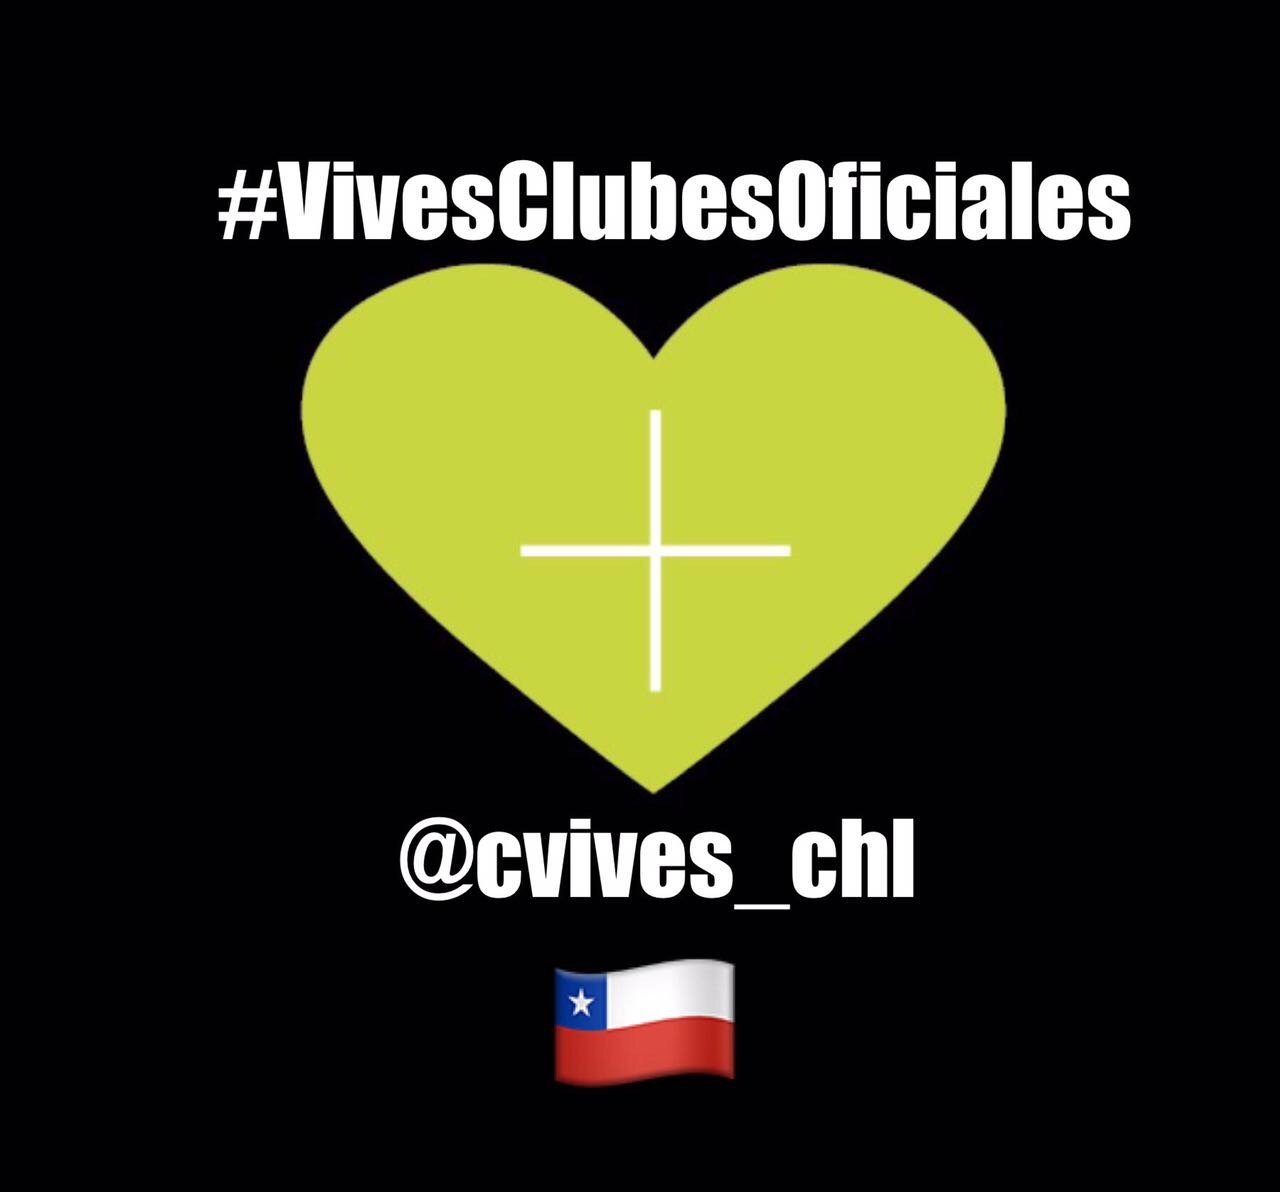 Club oficial de Carlos Vives en Chile. Cuenta manejada por @susesnich 
Bienvenidos!!